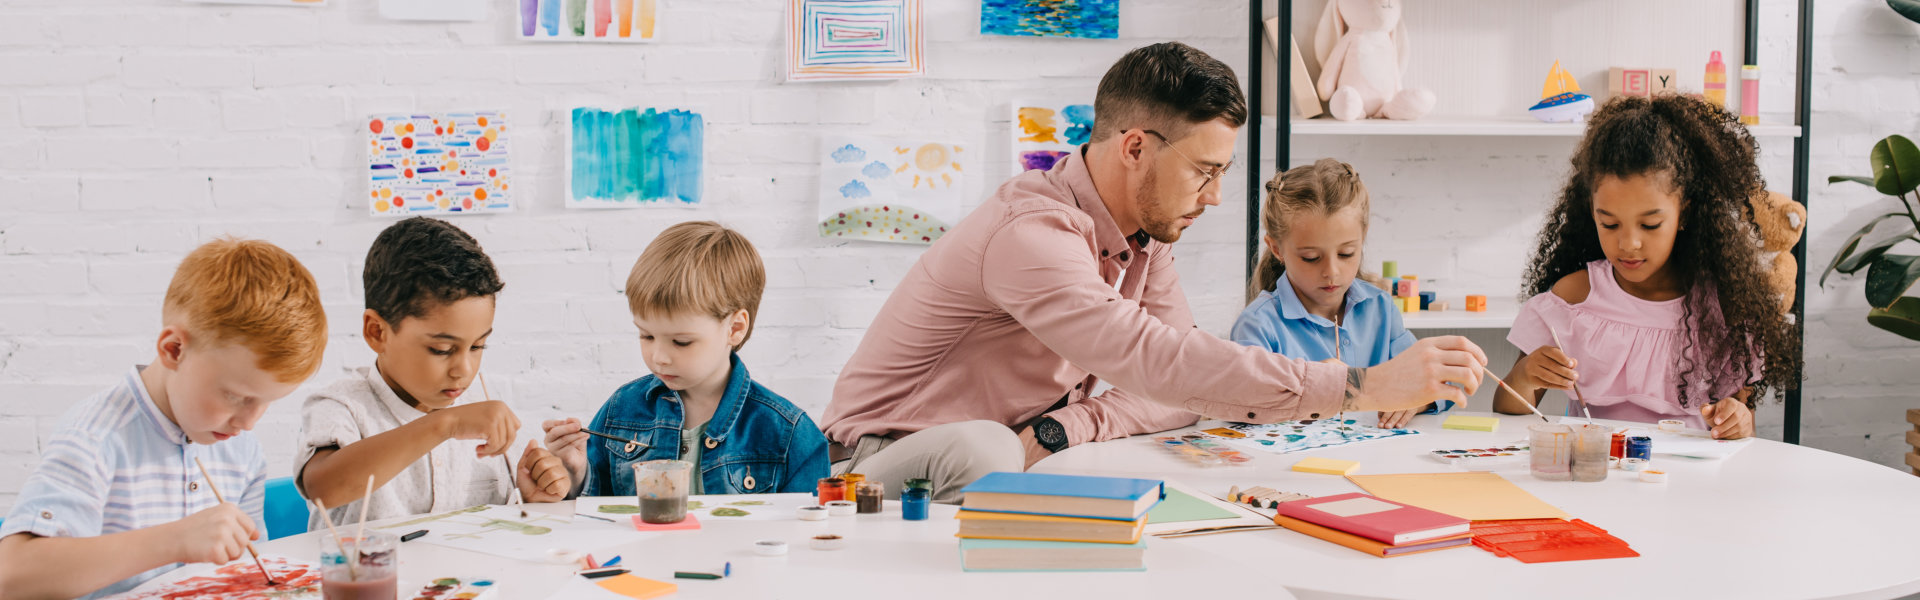 man teaching kids to paint